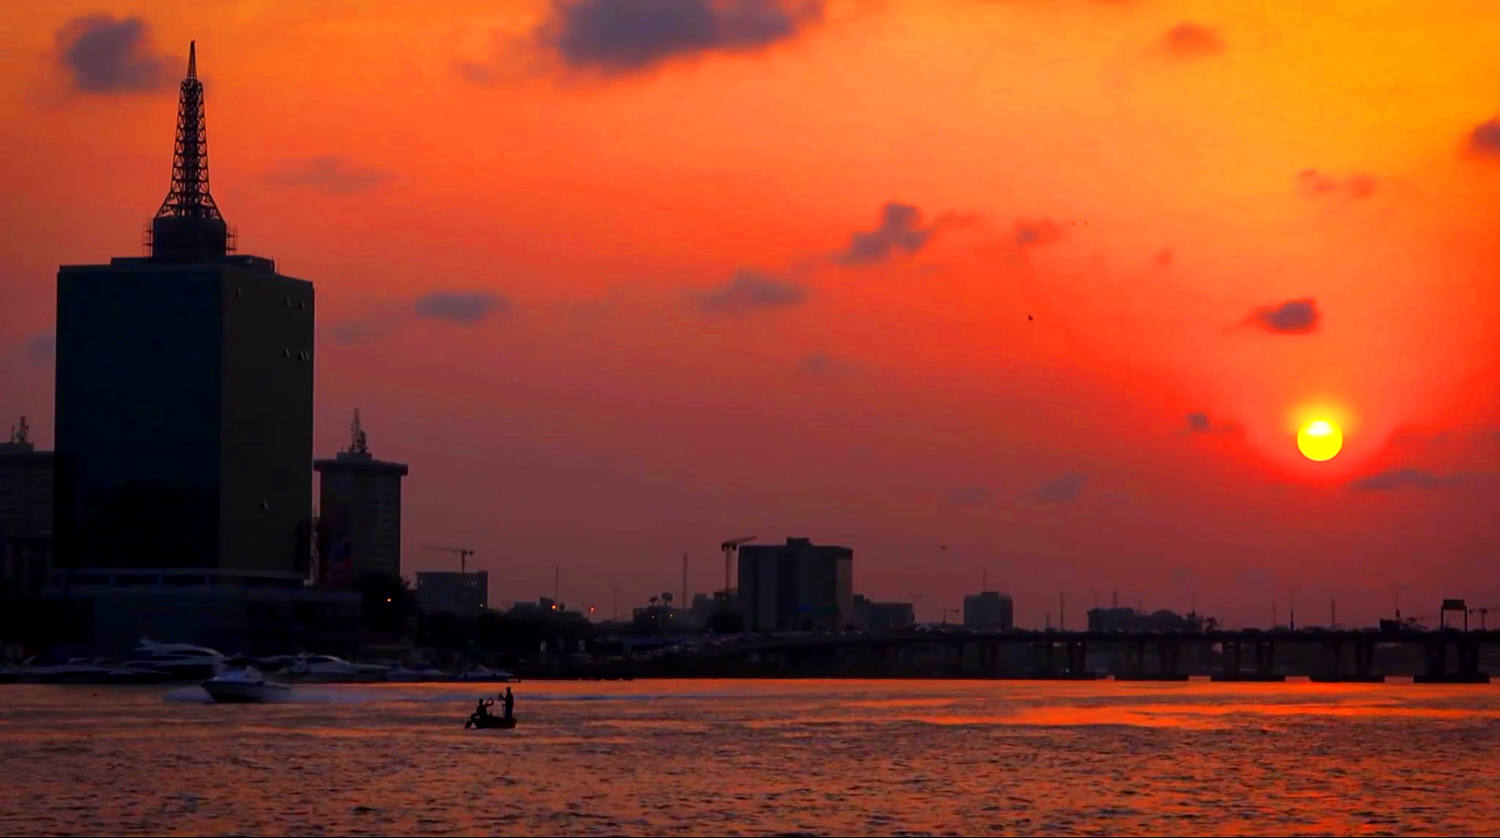 BD_Lekki_Lagos_Sunset